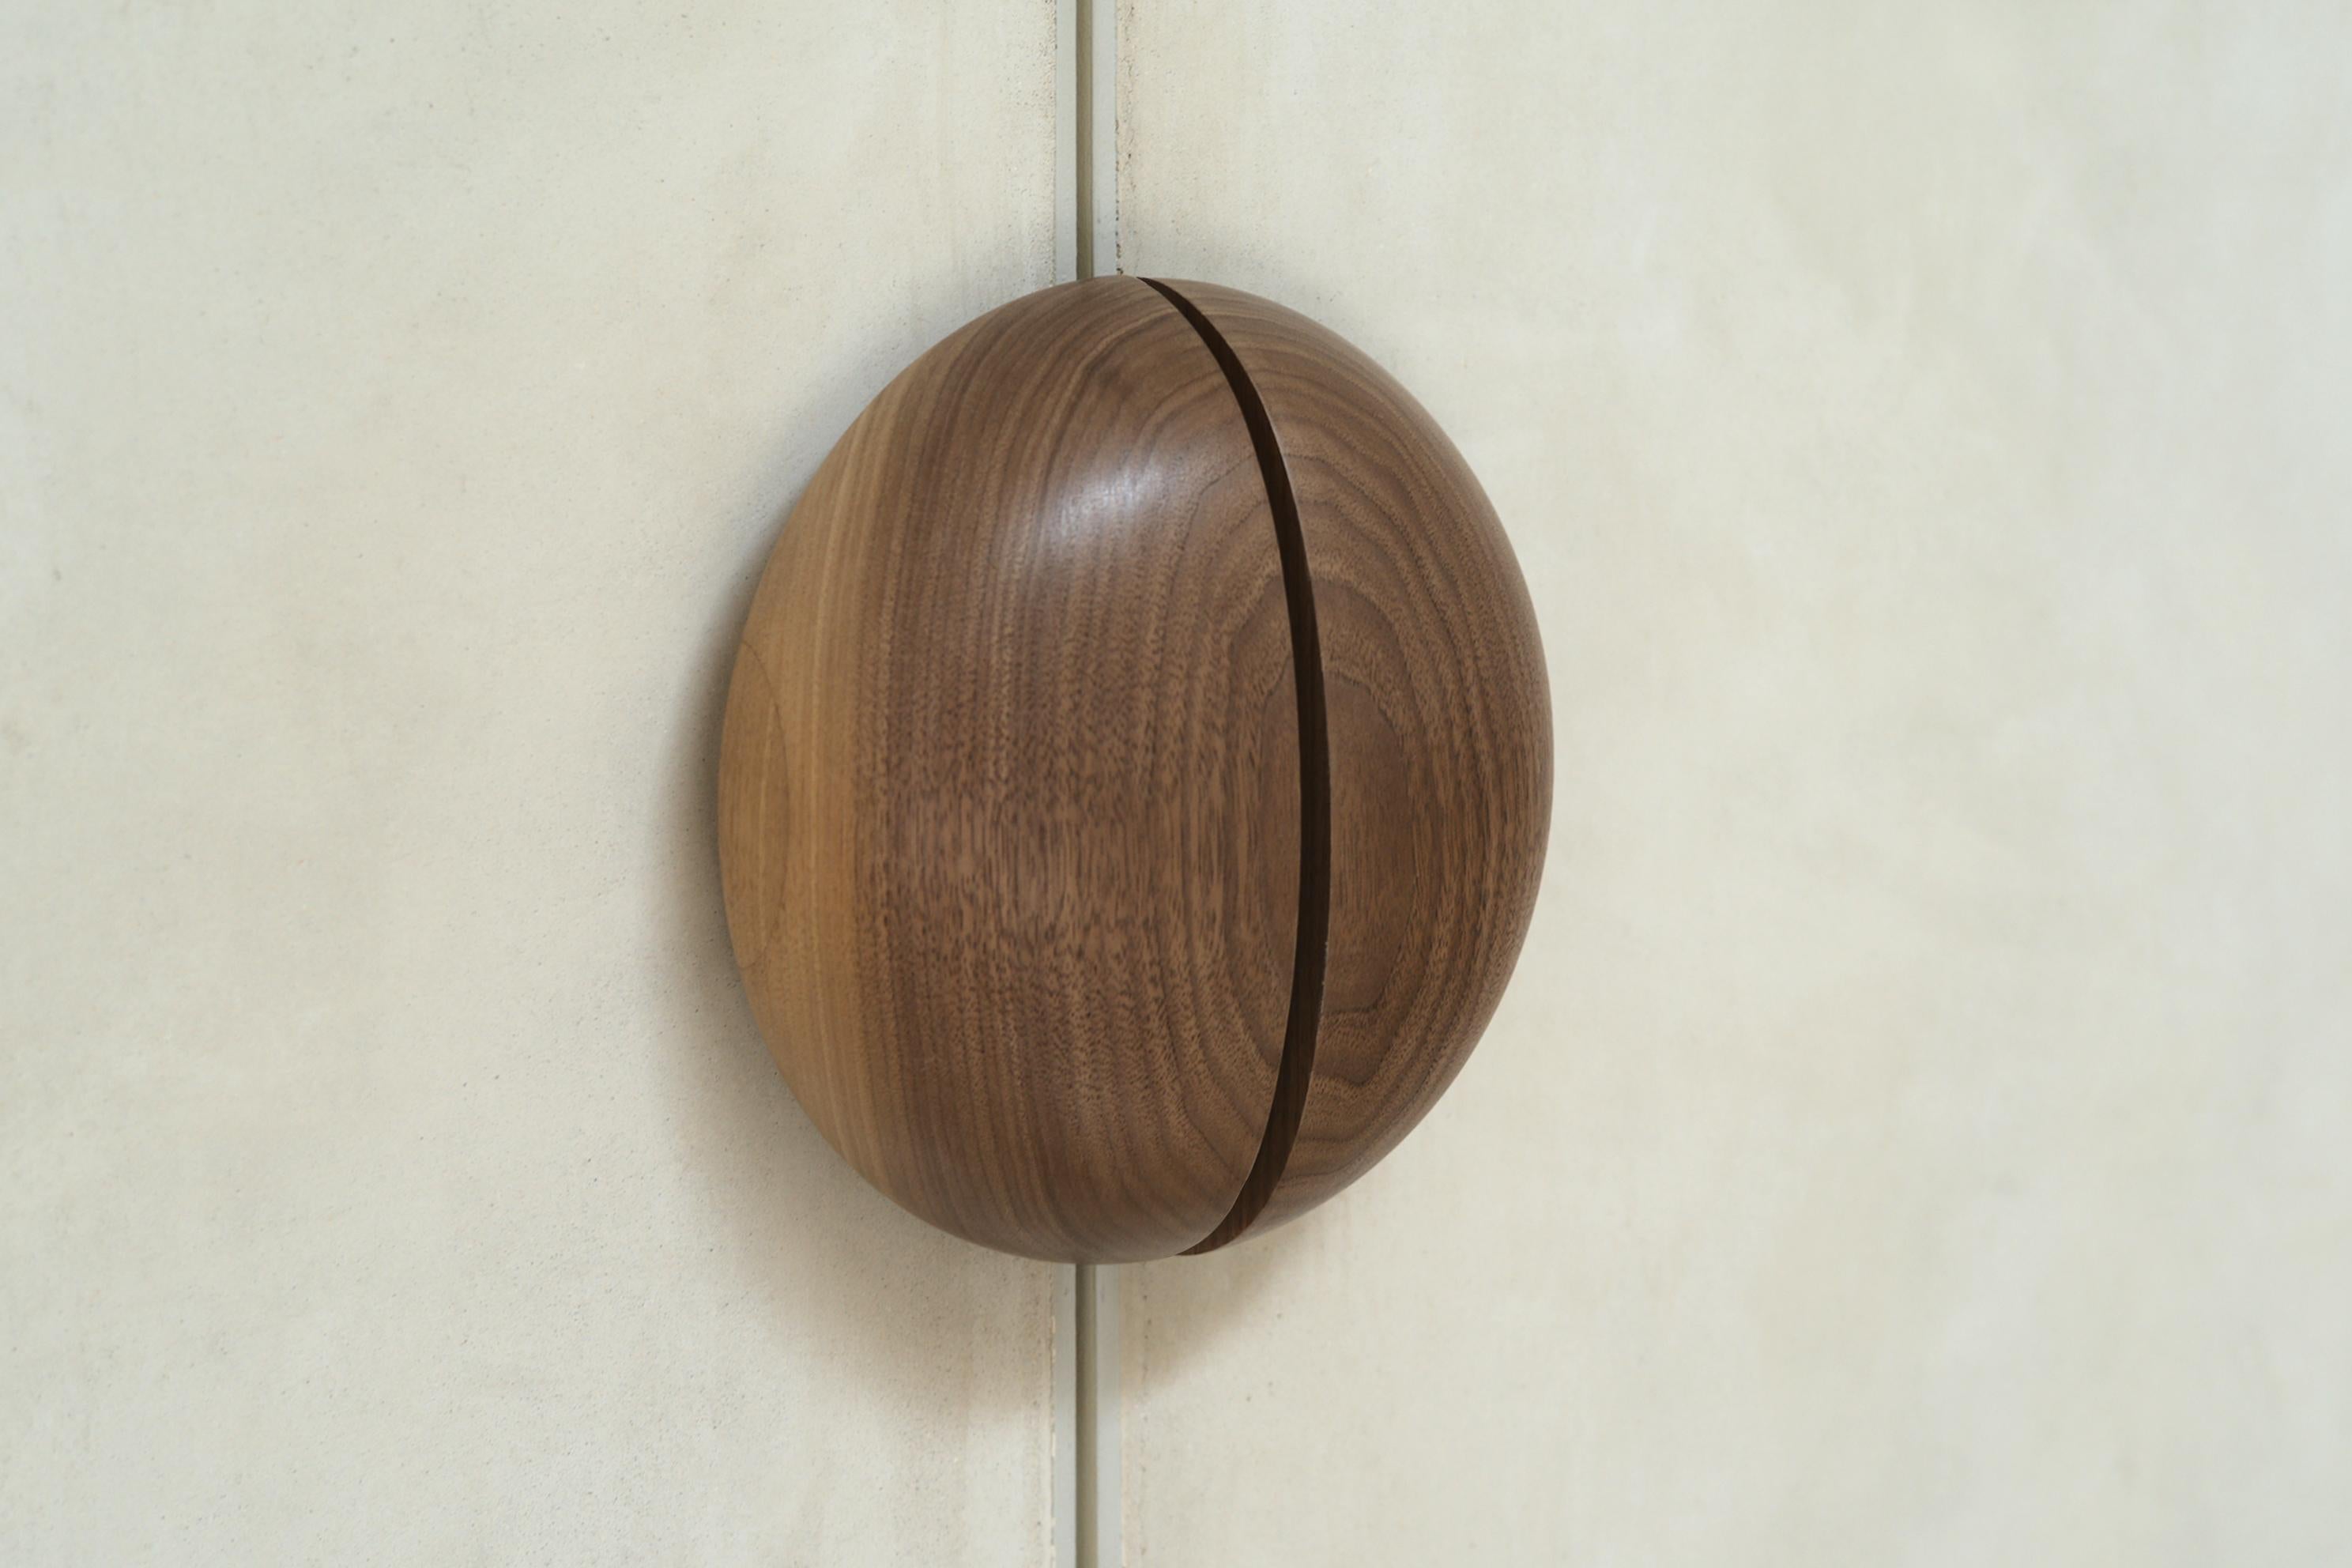 North American Large DOME Door Handles in Solid Walnut by Estudio Persona